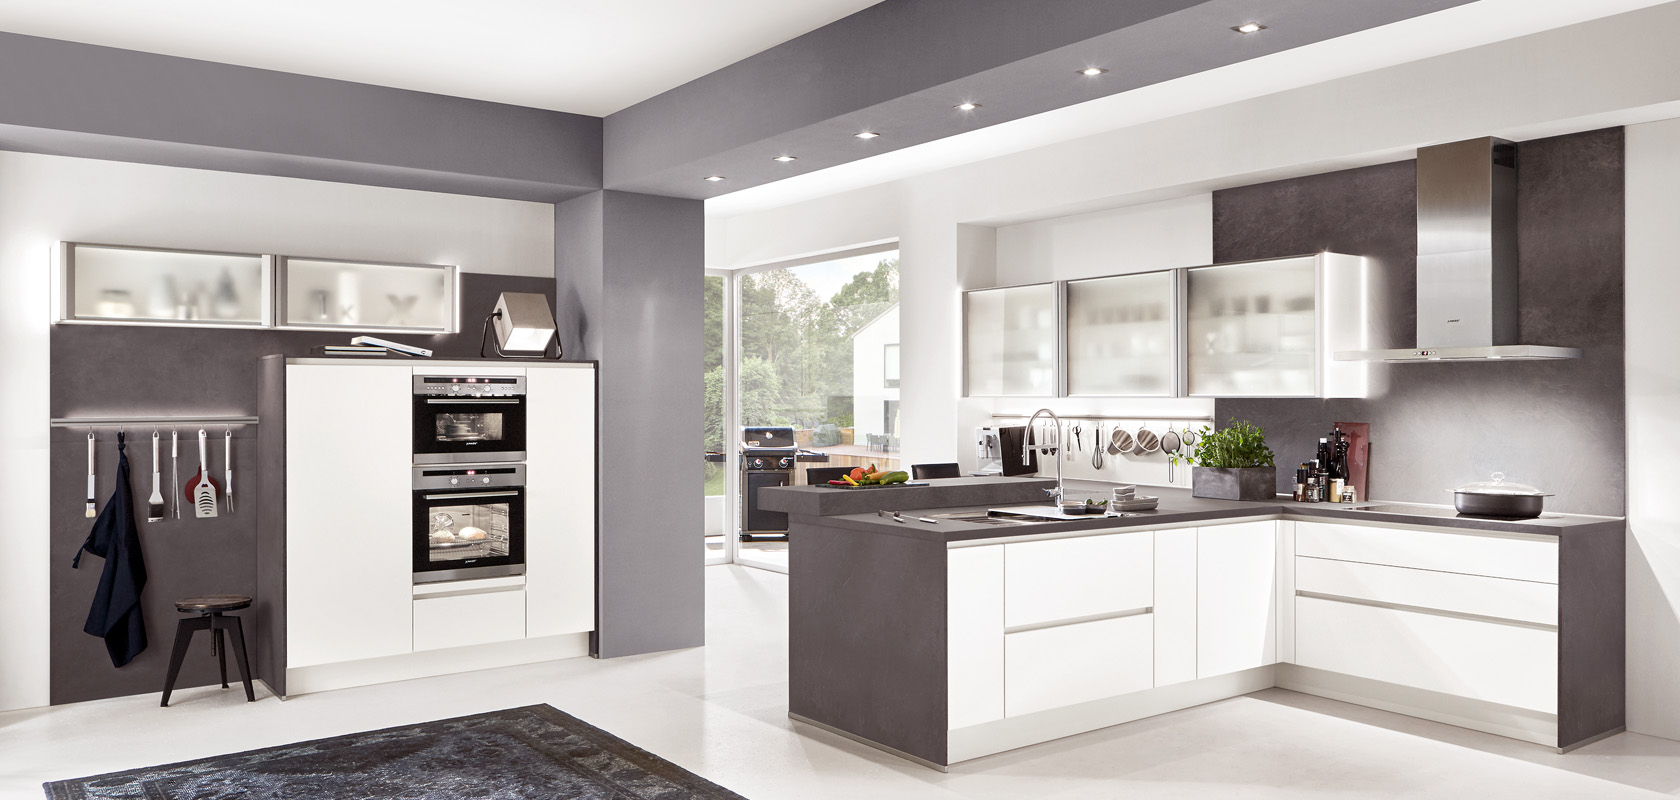 Moderne Küche mit Hochglanz-Schränken, Edelstahlgeräten und einem schlanken Design in einer Kombination aus weißen und grauen Tönen, die einen zeitgemäßen Look bietet.